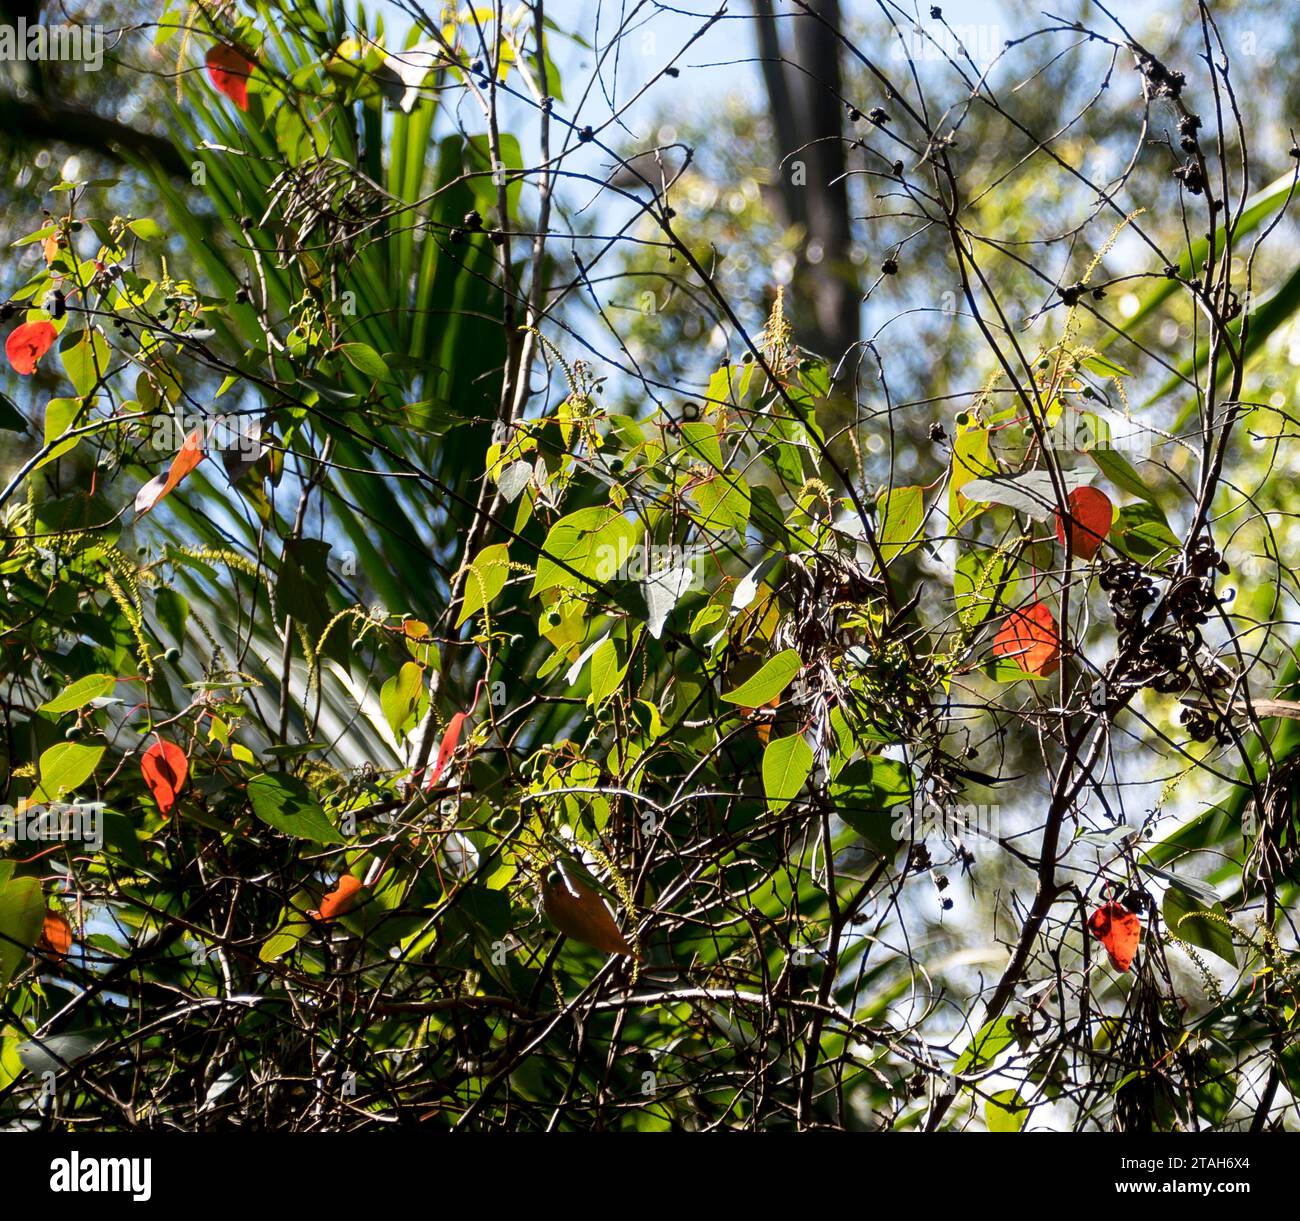 Grüne und charakteristische ältere rote Blätter des australischen blutenden Herzbaums Homalanthus populifolius im subtropischen Tiefland-Regenwald in Queensland. Stockfoto